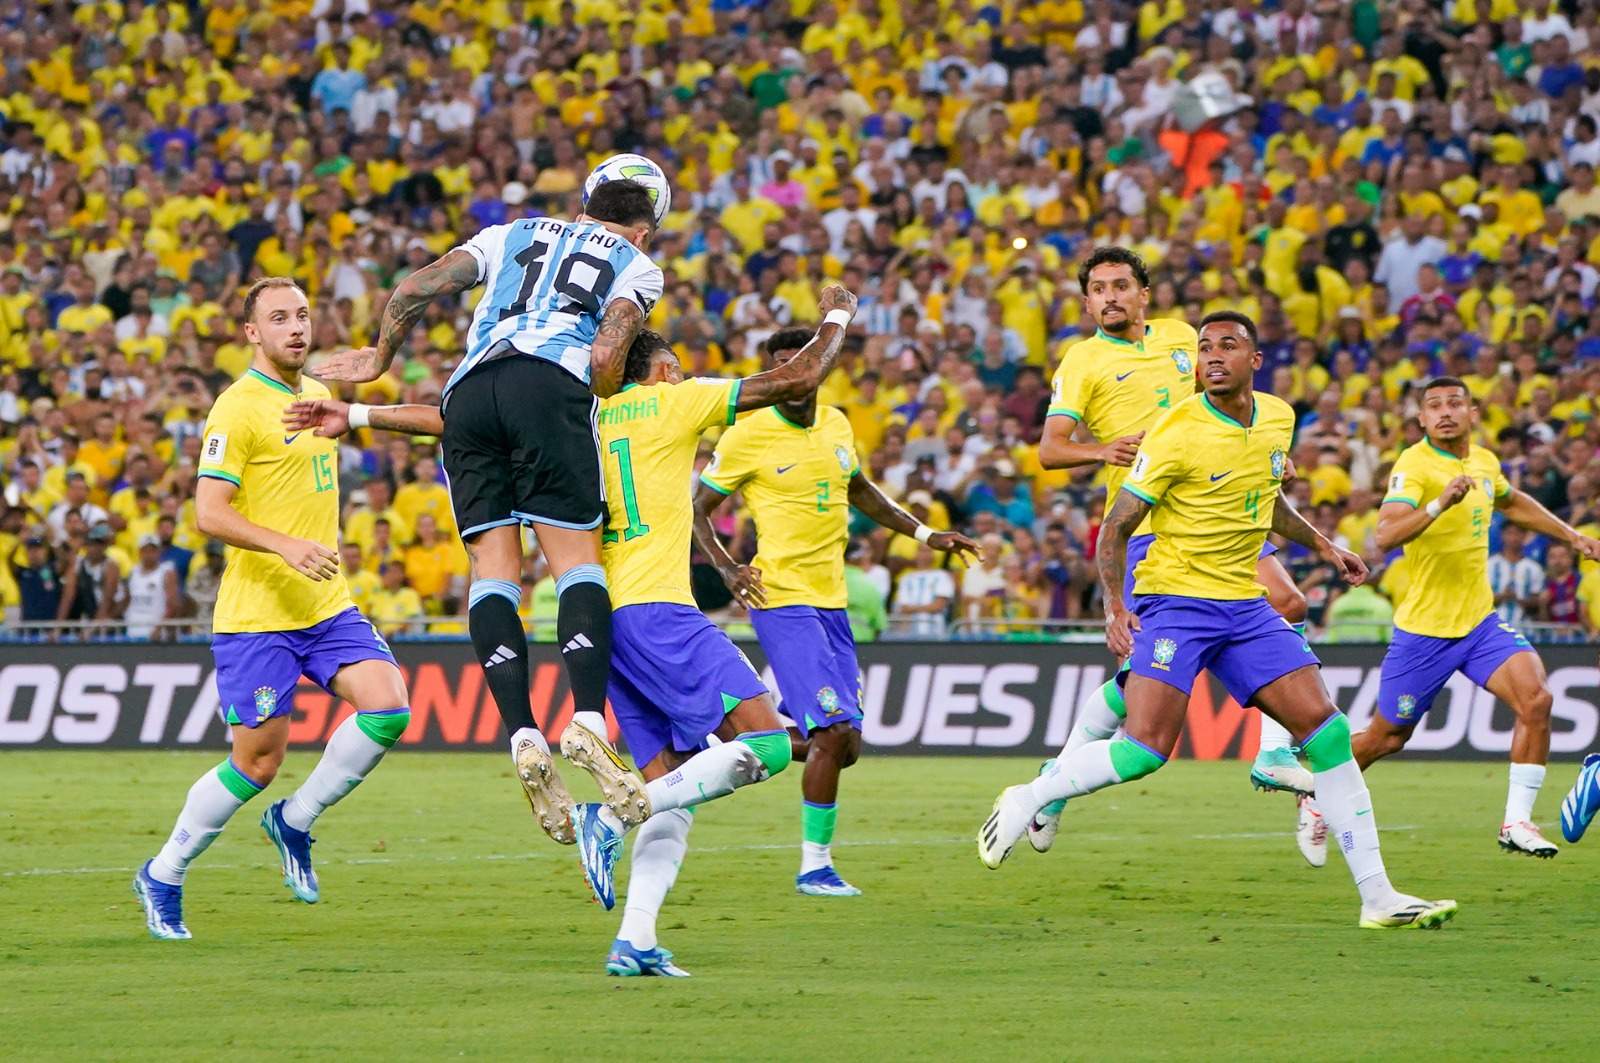 Foto: Diario Olé/Otamendi, de cabeça, faz o gol da vitória da Argentina e impõe a terceira derrota seguida ao Brasil